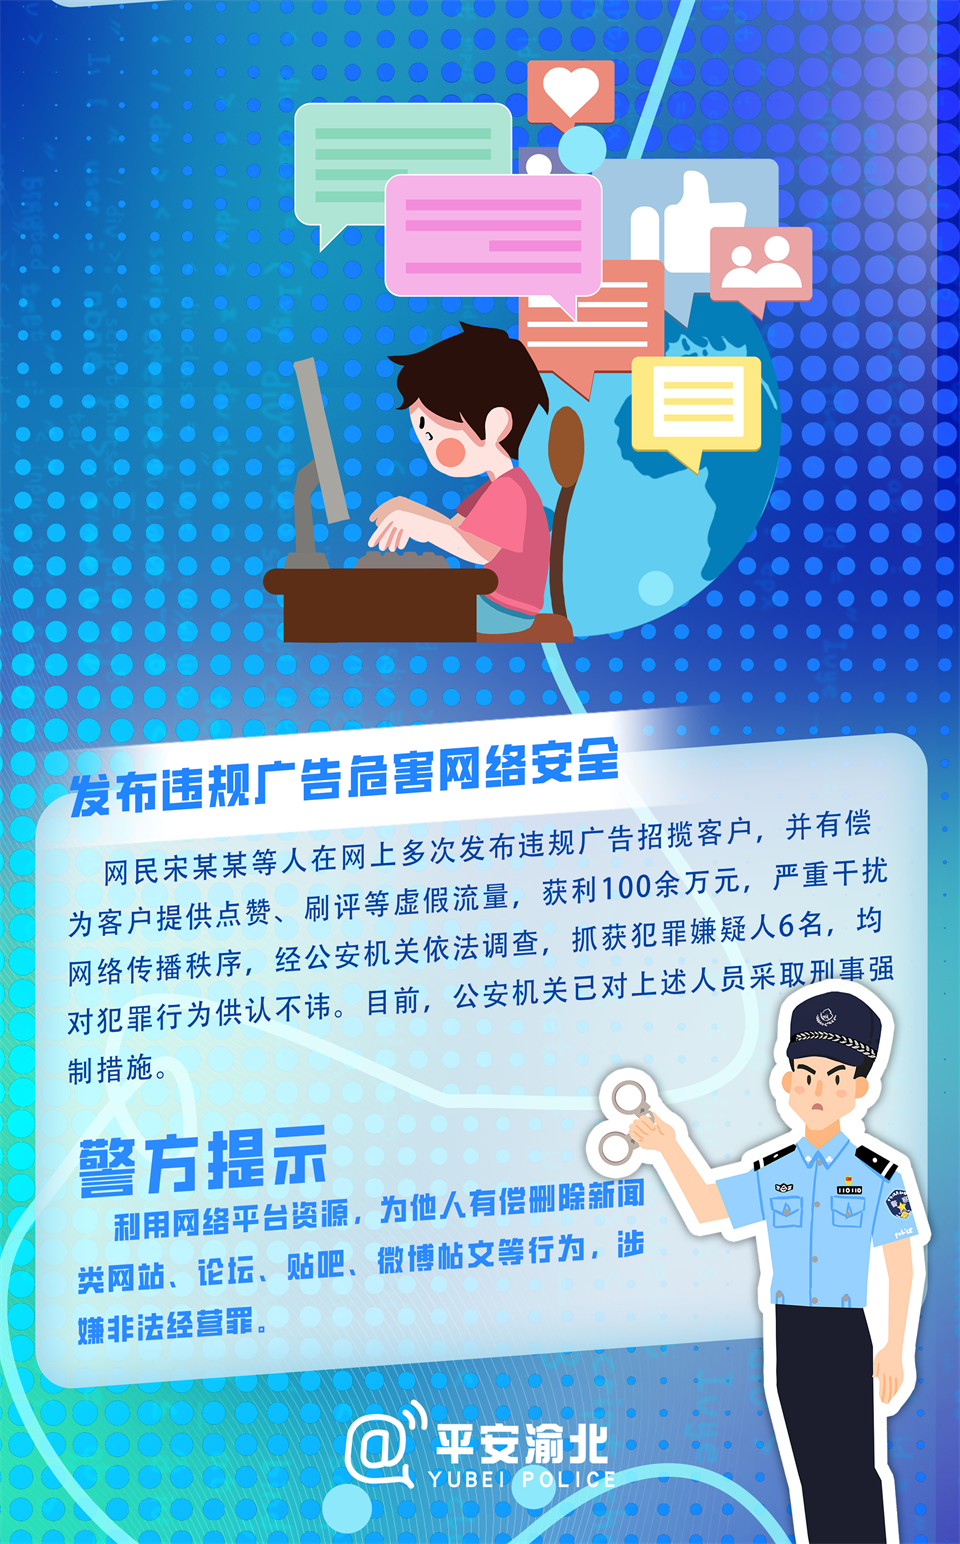 重庆渝北警方发布典型网络造谣案图解_fororder_图片4